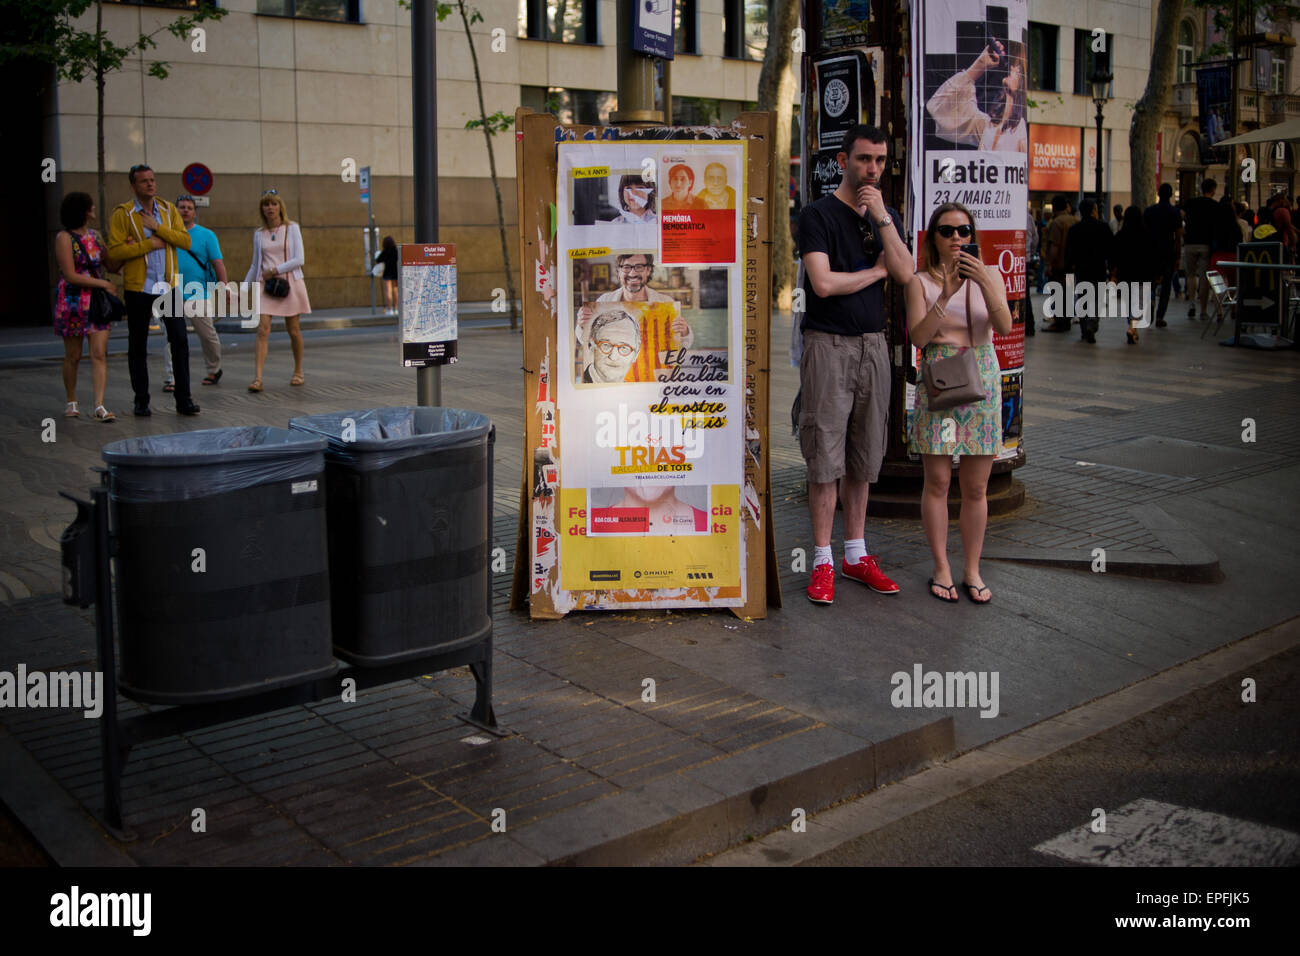 Ein paar Touristen befinden sich neben einem Zaun Wahlpropaganda in Barcelona. Stockfoto